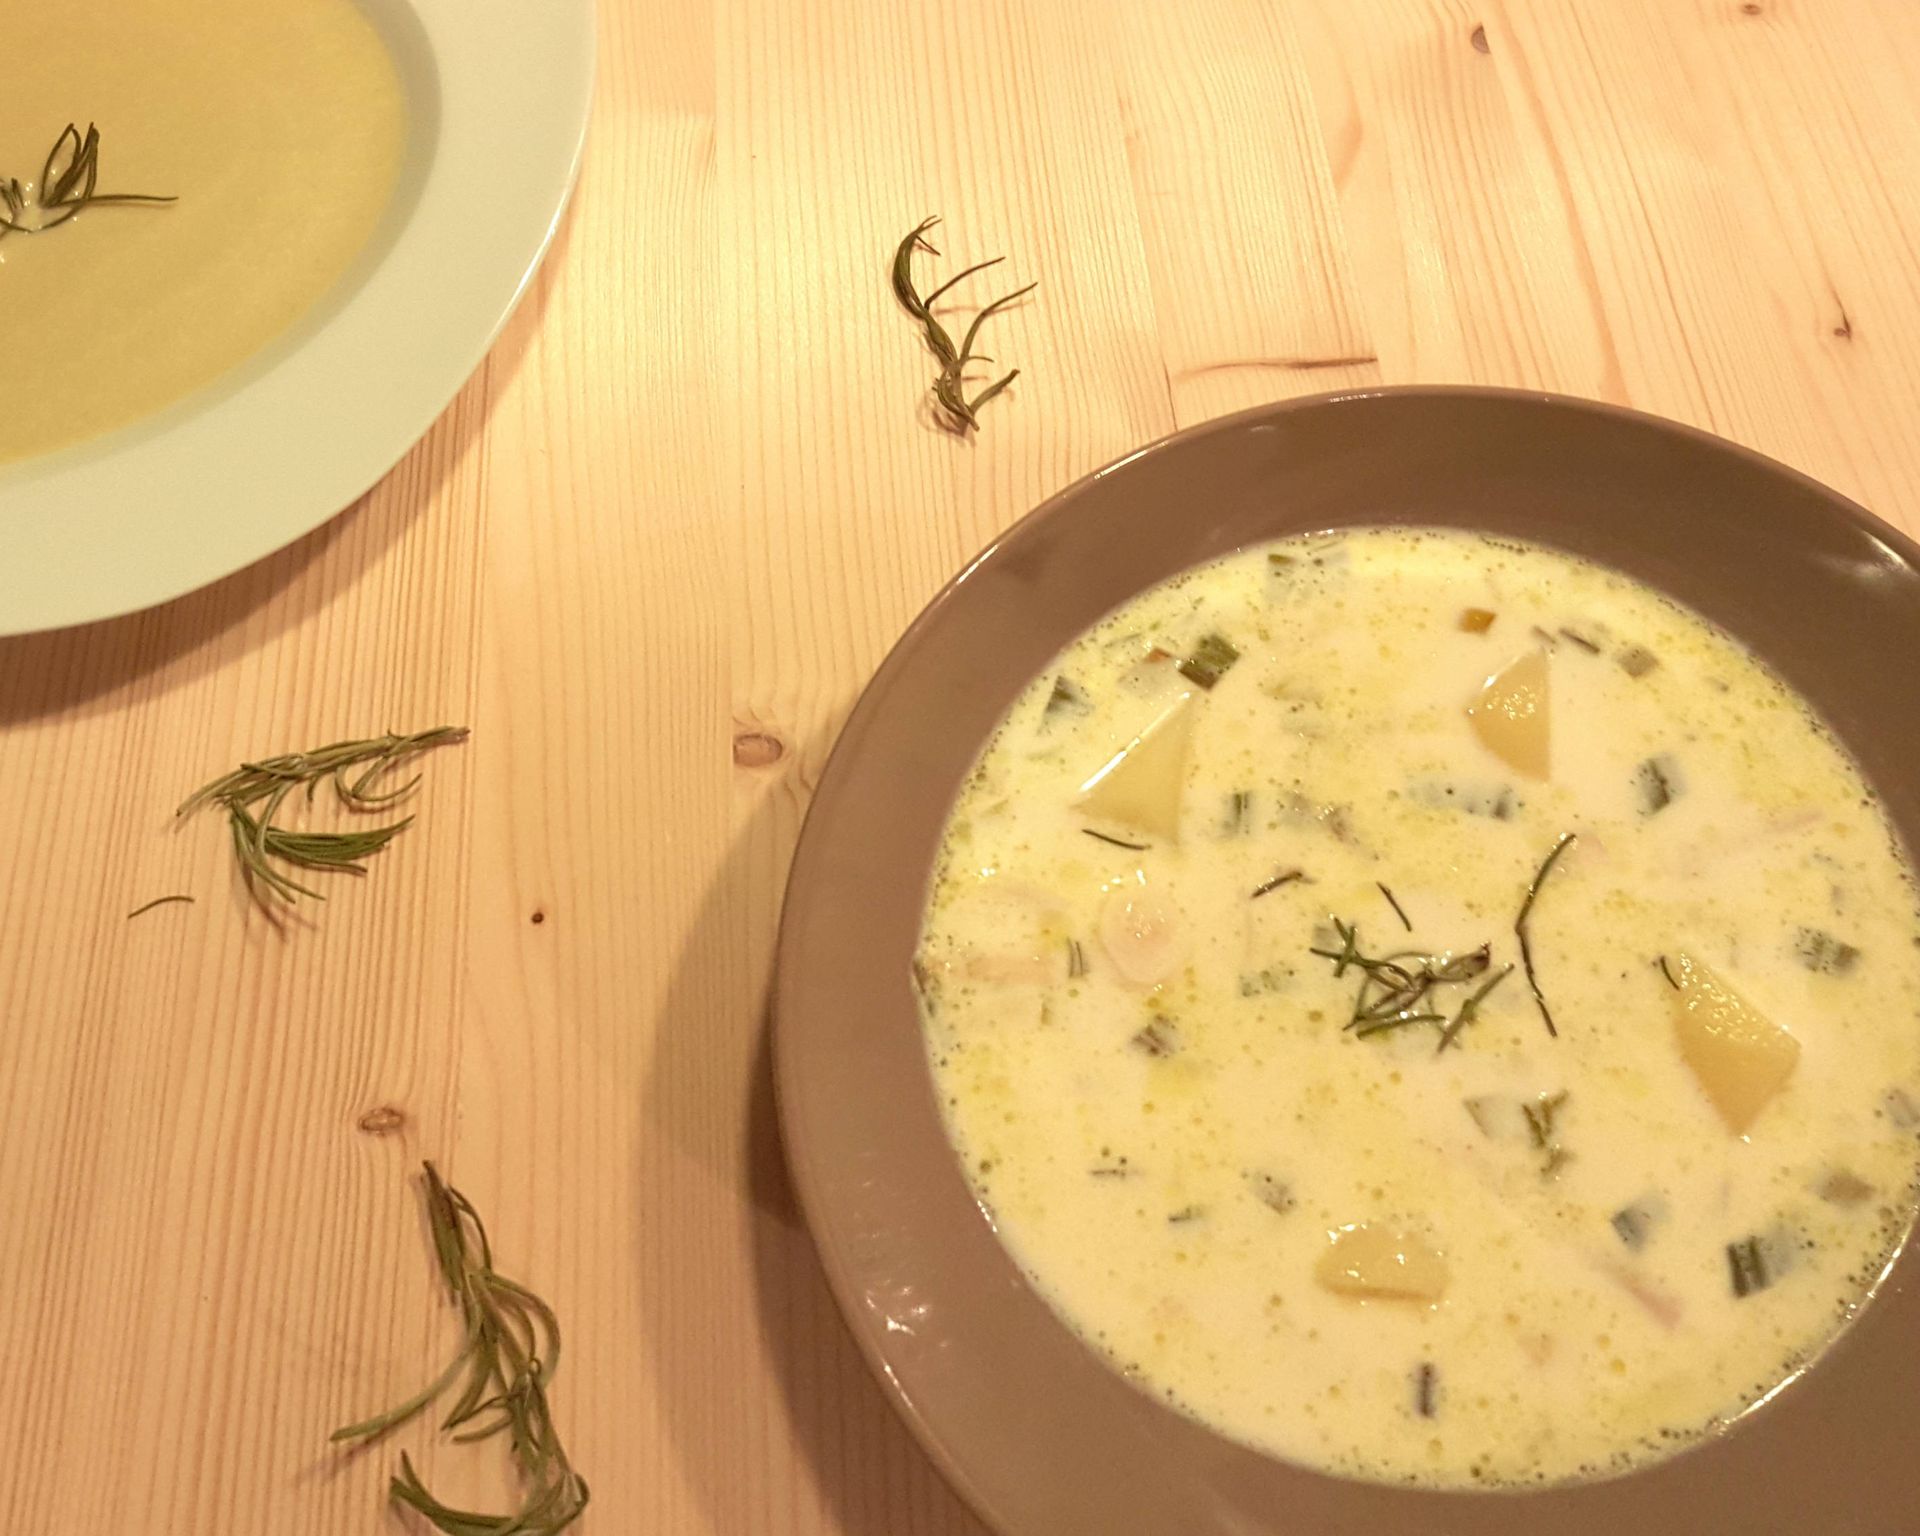 Mliečna polievka zo surovín podľa receptu. Nabratá je v tmavej miske a na drevenom stole. Výrazné sú zemiaky a rozmarín.